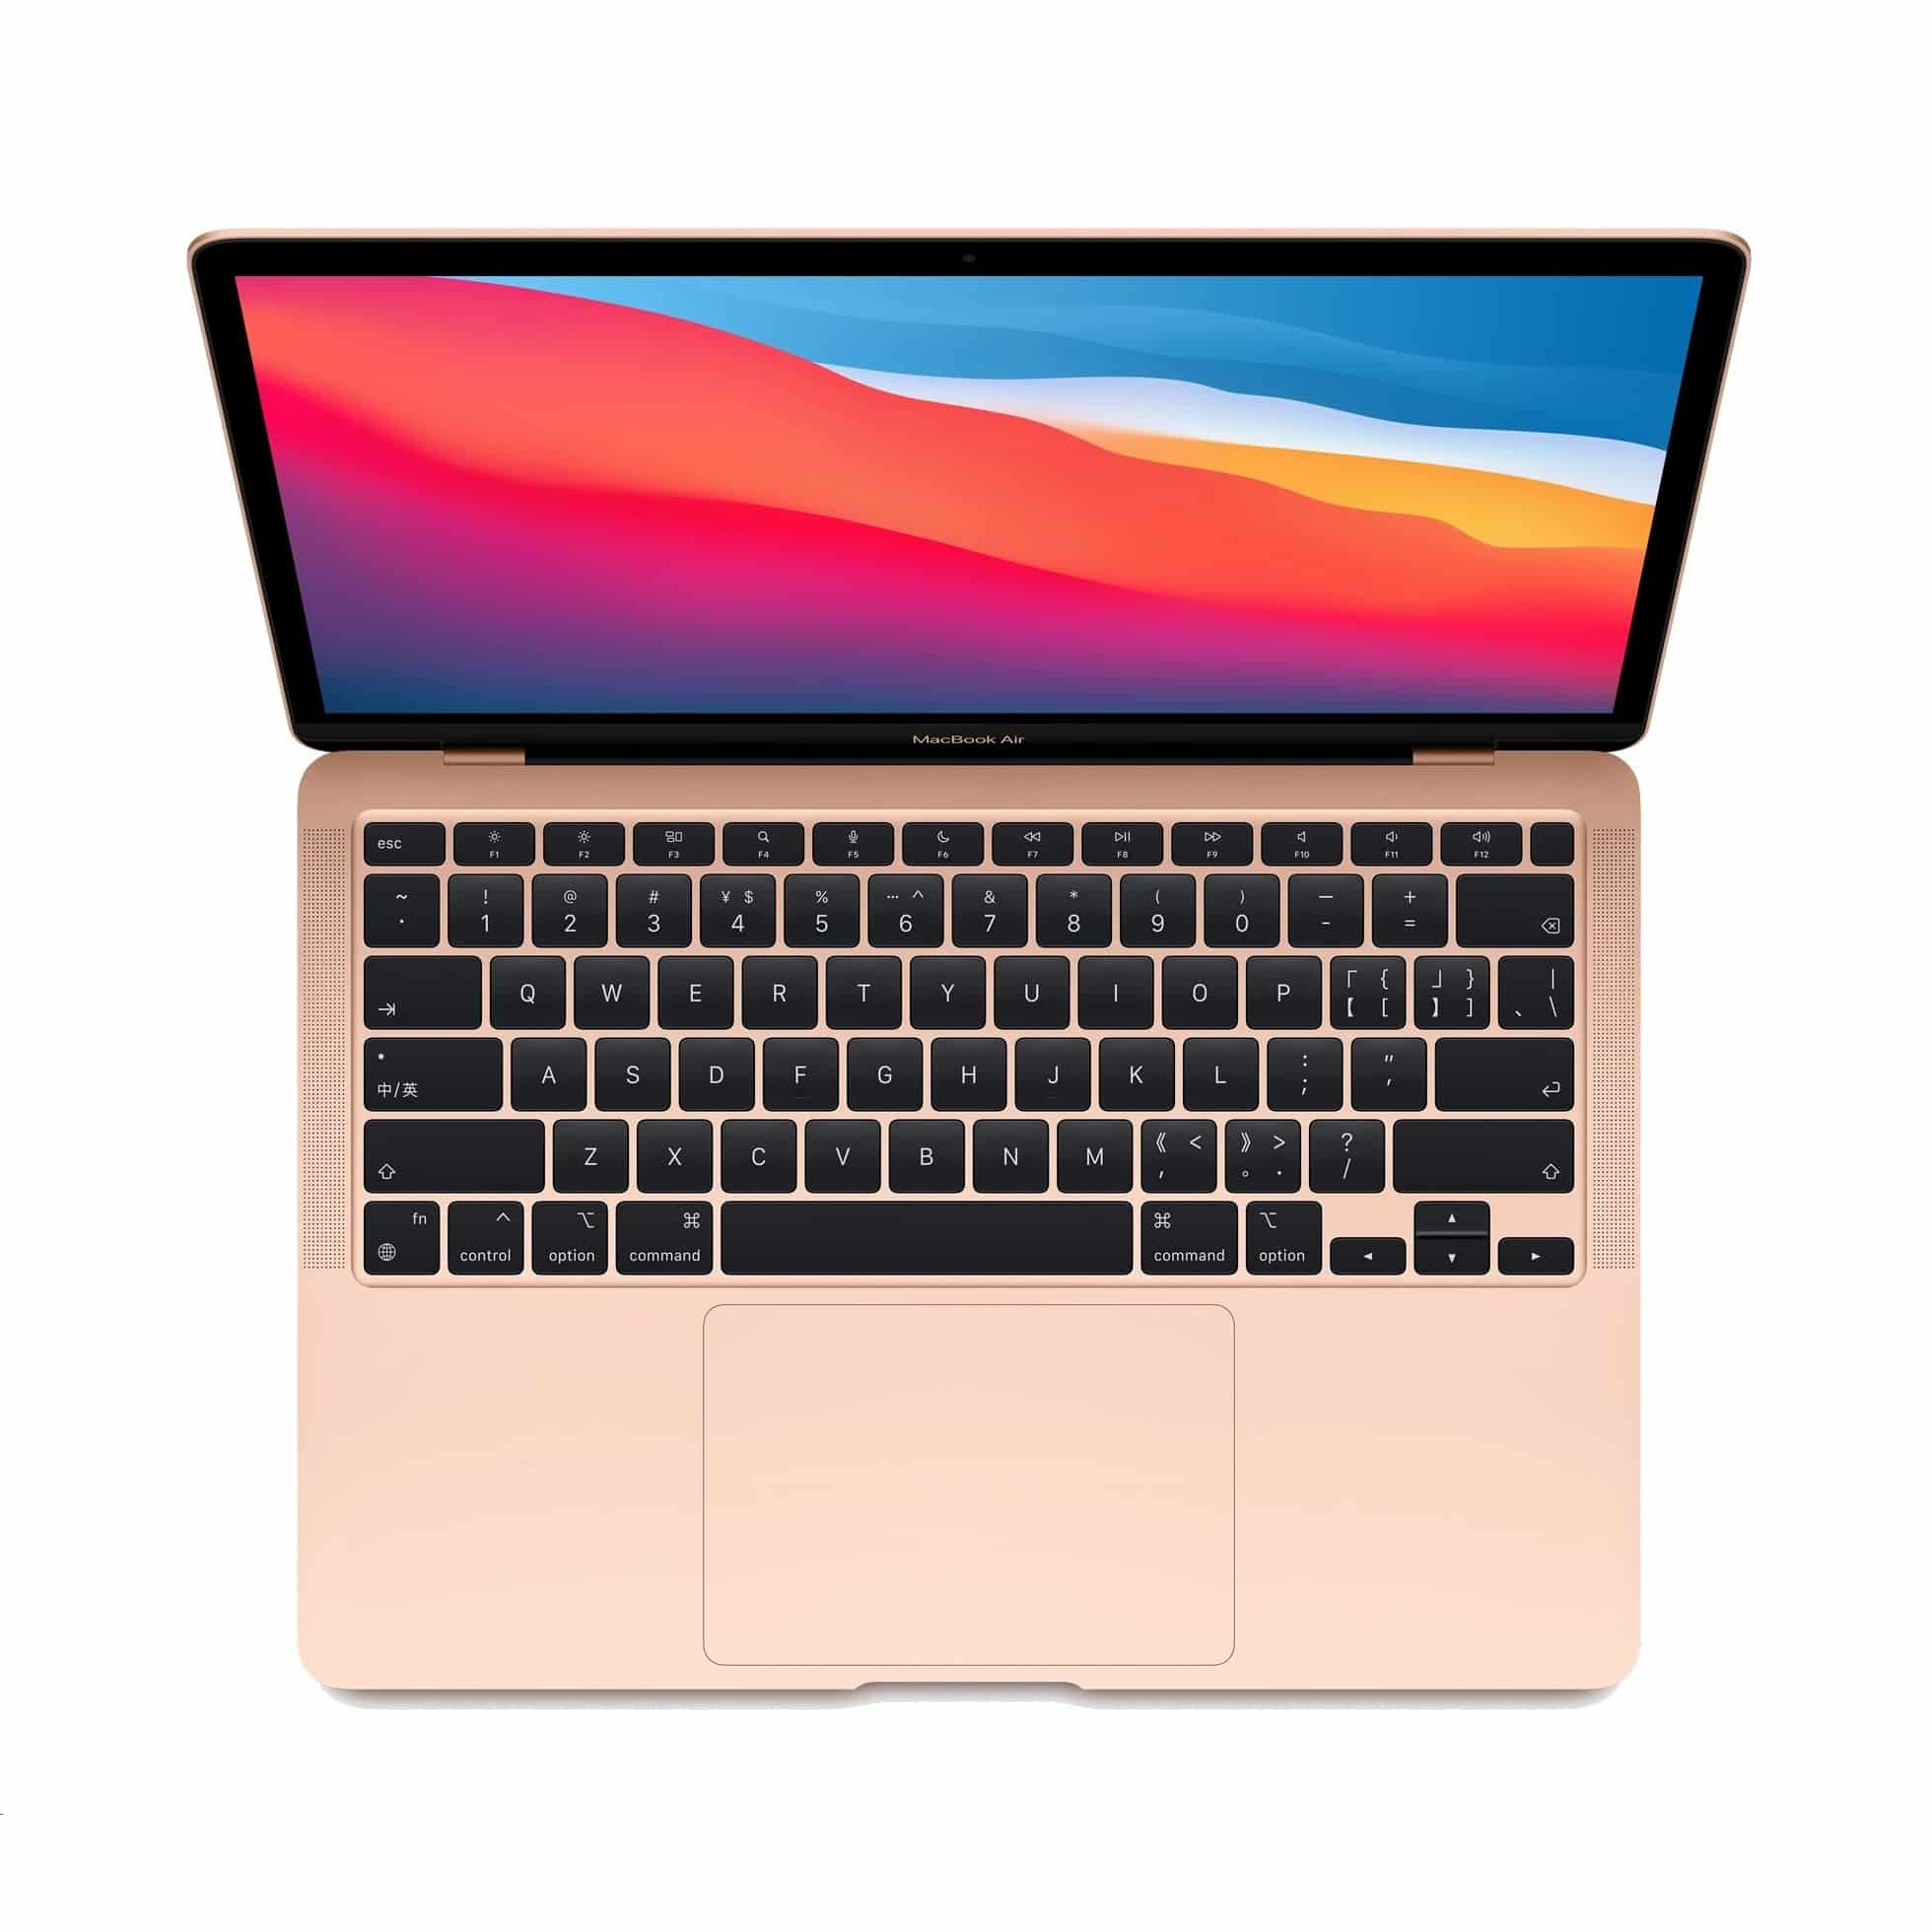 【超美品】MacBook AIR M1 256GB